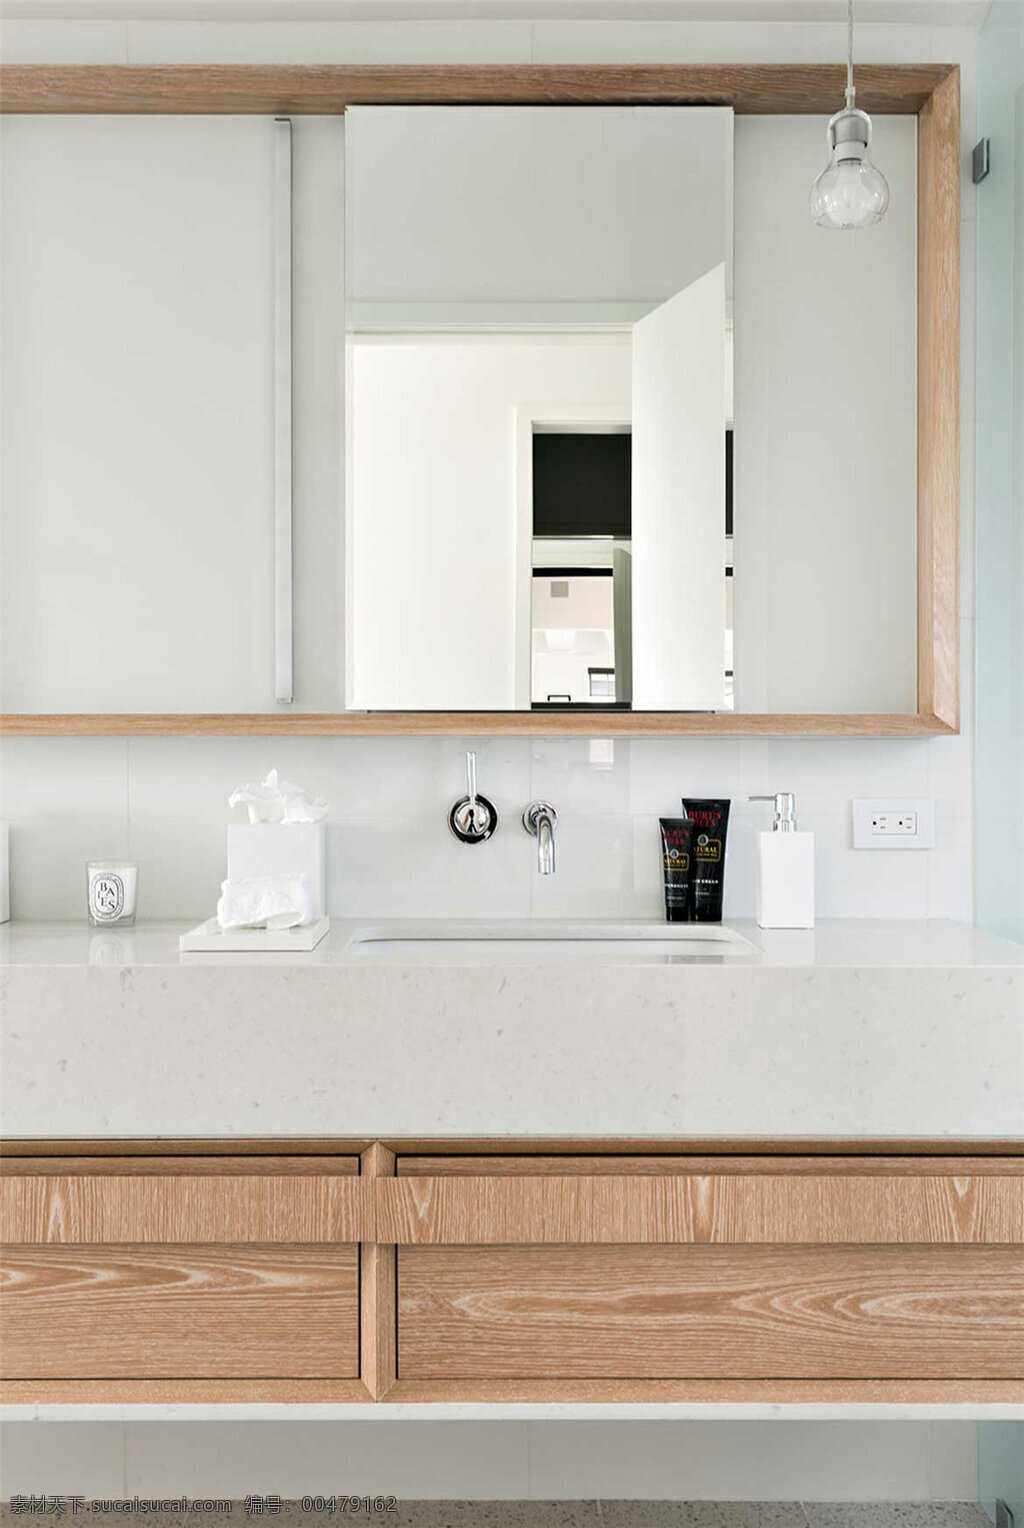 简约 卫生间 洗手盆 装修 效果图 白色墙壁 长方形镜子 镜子 木质柜子 水龙头 洗手液